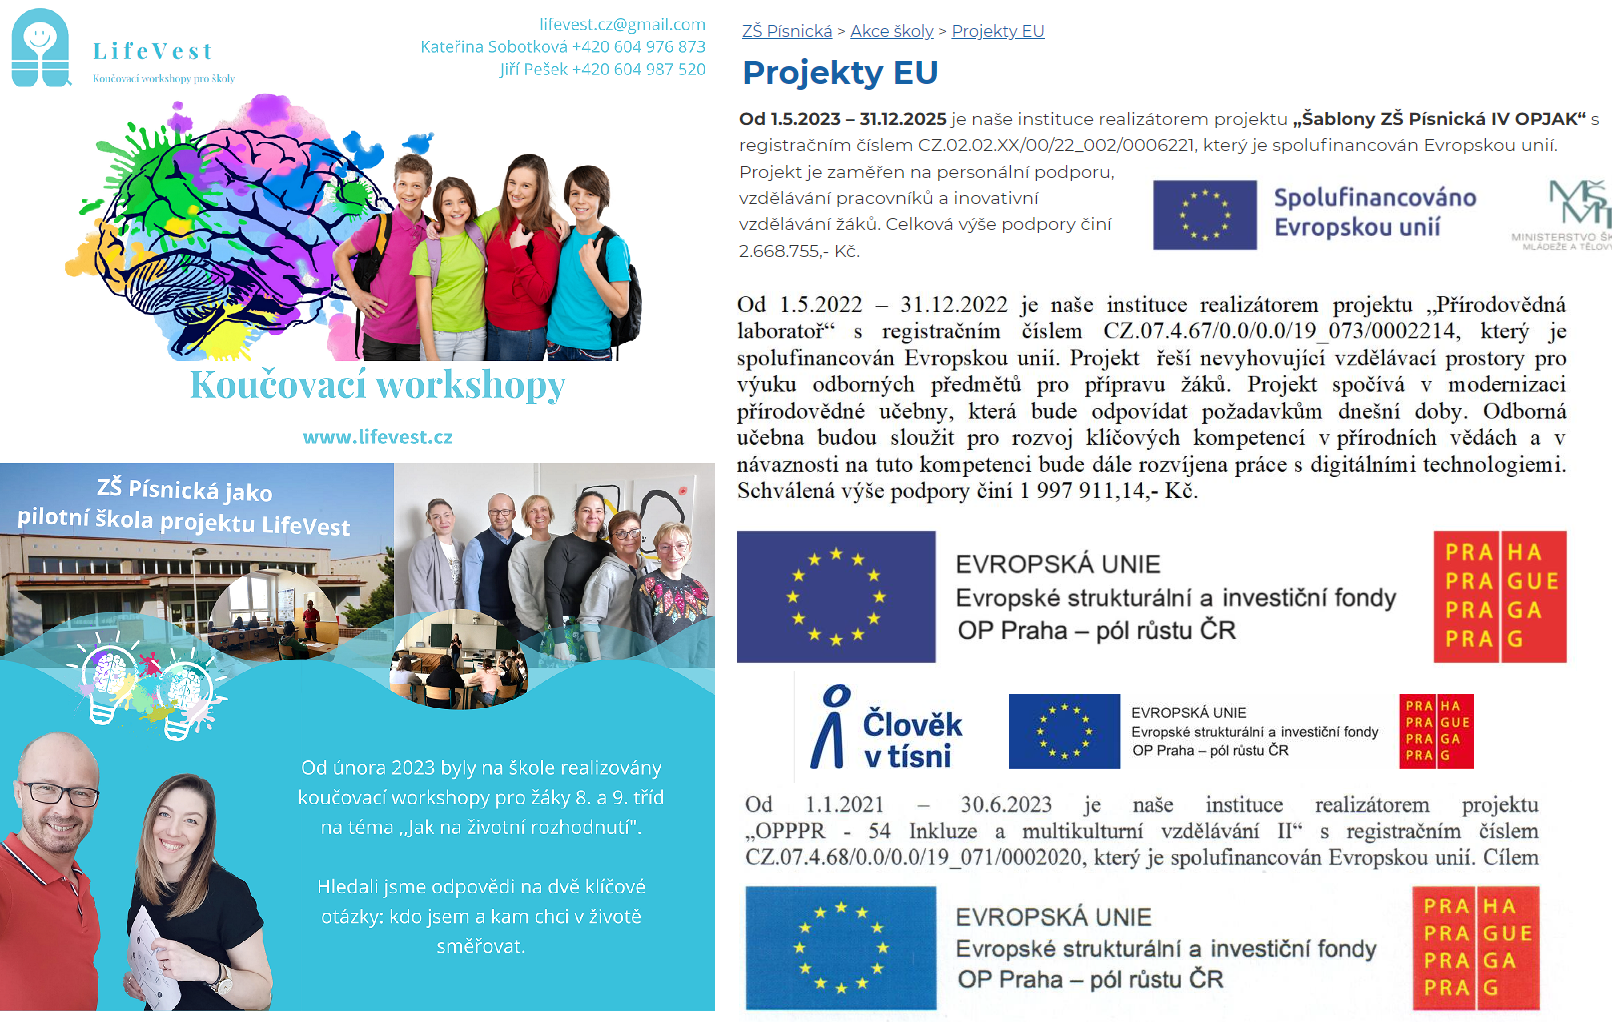 Projekty EU v obrázku